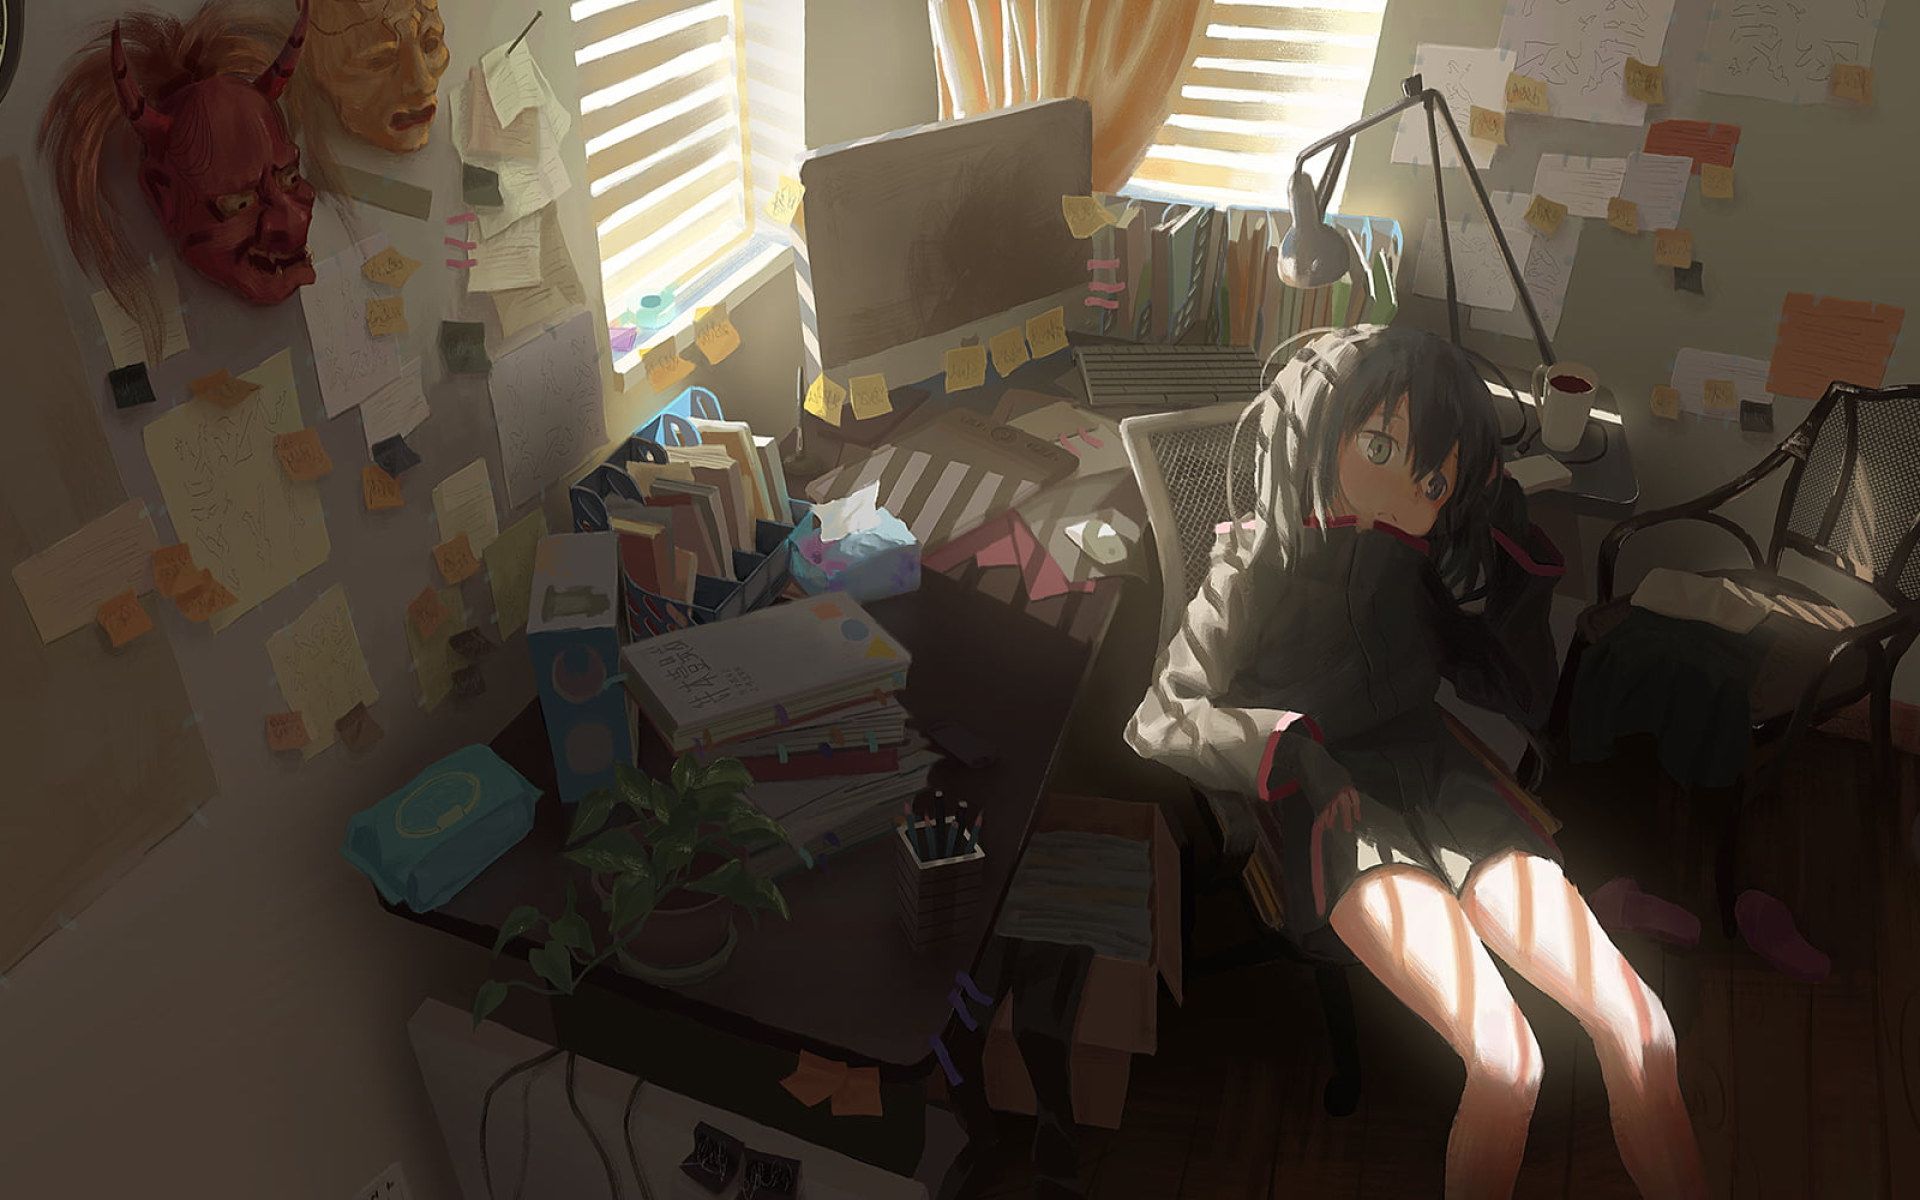 Art Wallpaper • Wallpaper Anime girls, Anime: Gamers!, room, interior, sitting, desk • Wallpaper For You The Best Wallpaper For Desktop & Mobile